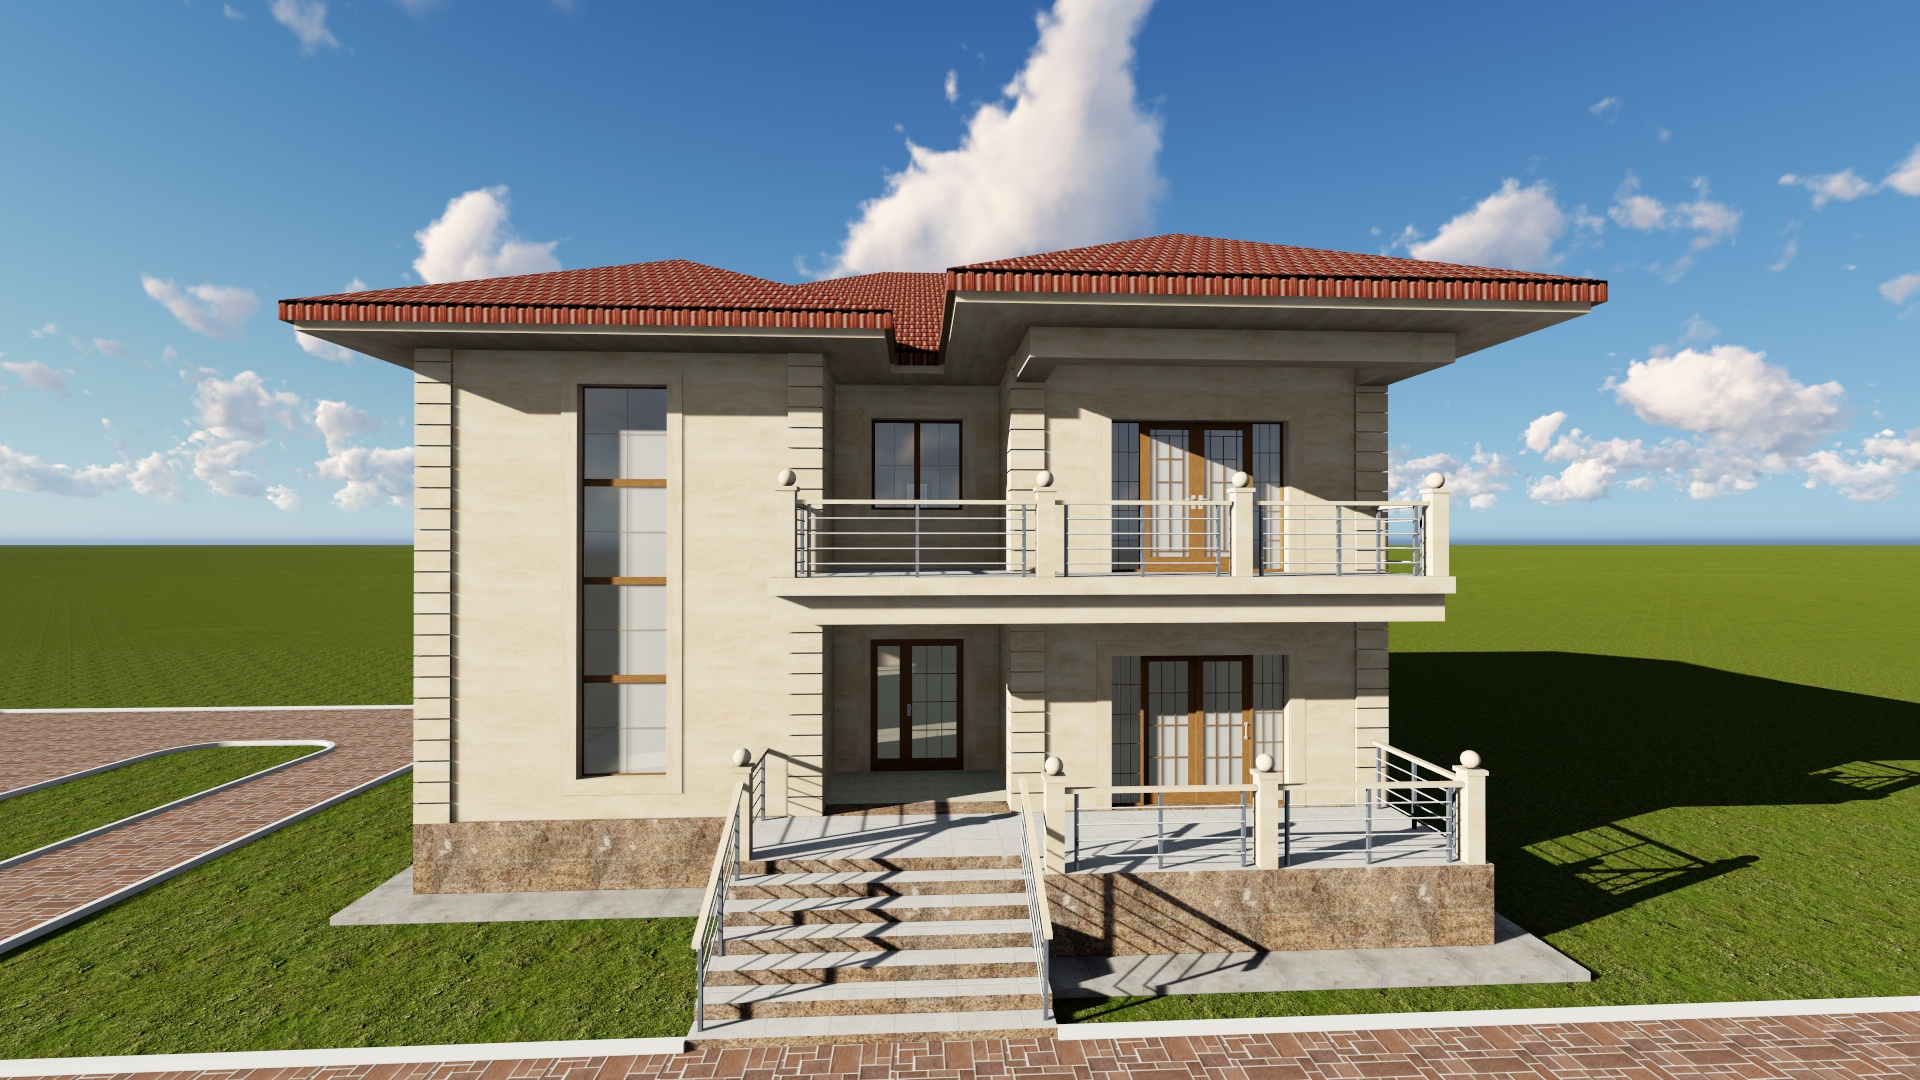 2х этажный жилой дом - Чертежи, 3D Модели, Проекты, Коттеджи и частные дома